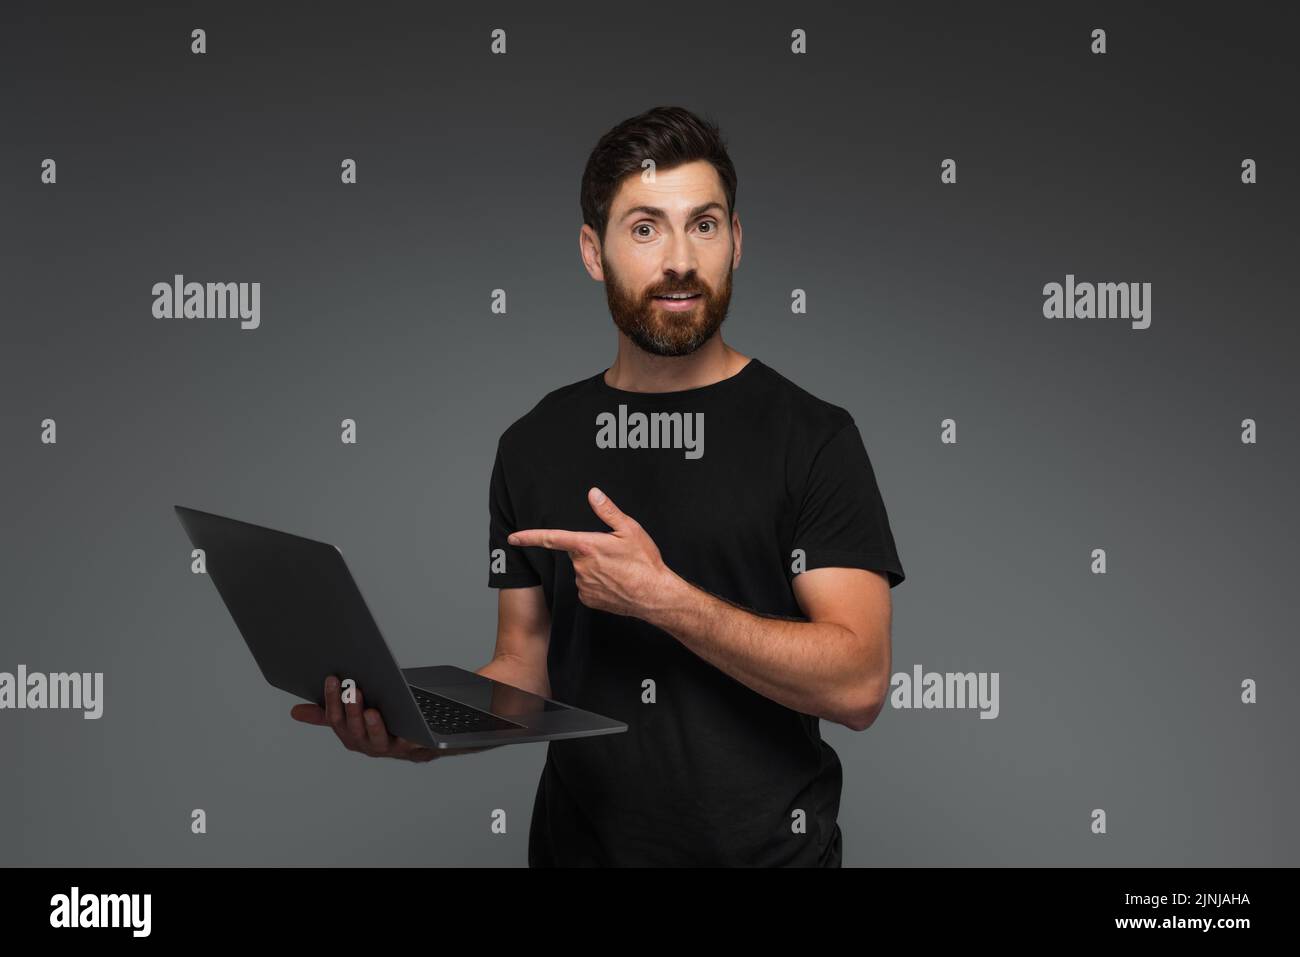 hombre asombrado y barbudo en camiseta negra apuntando con el dedo al ordenador portátil aislado sobre imagen de archivo gris Foto de stock